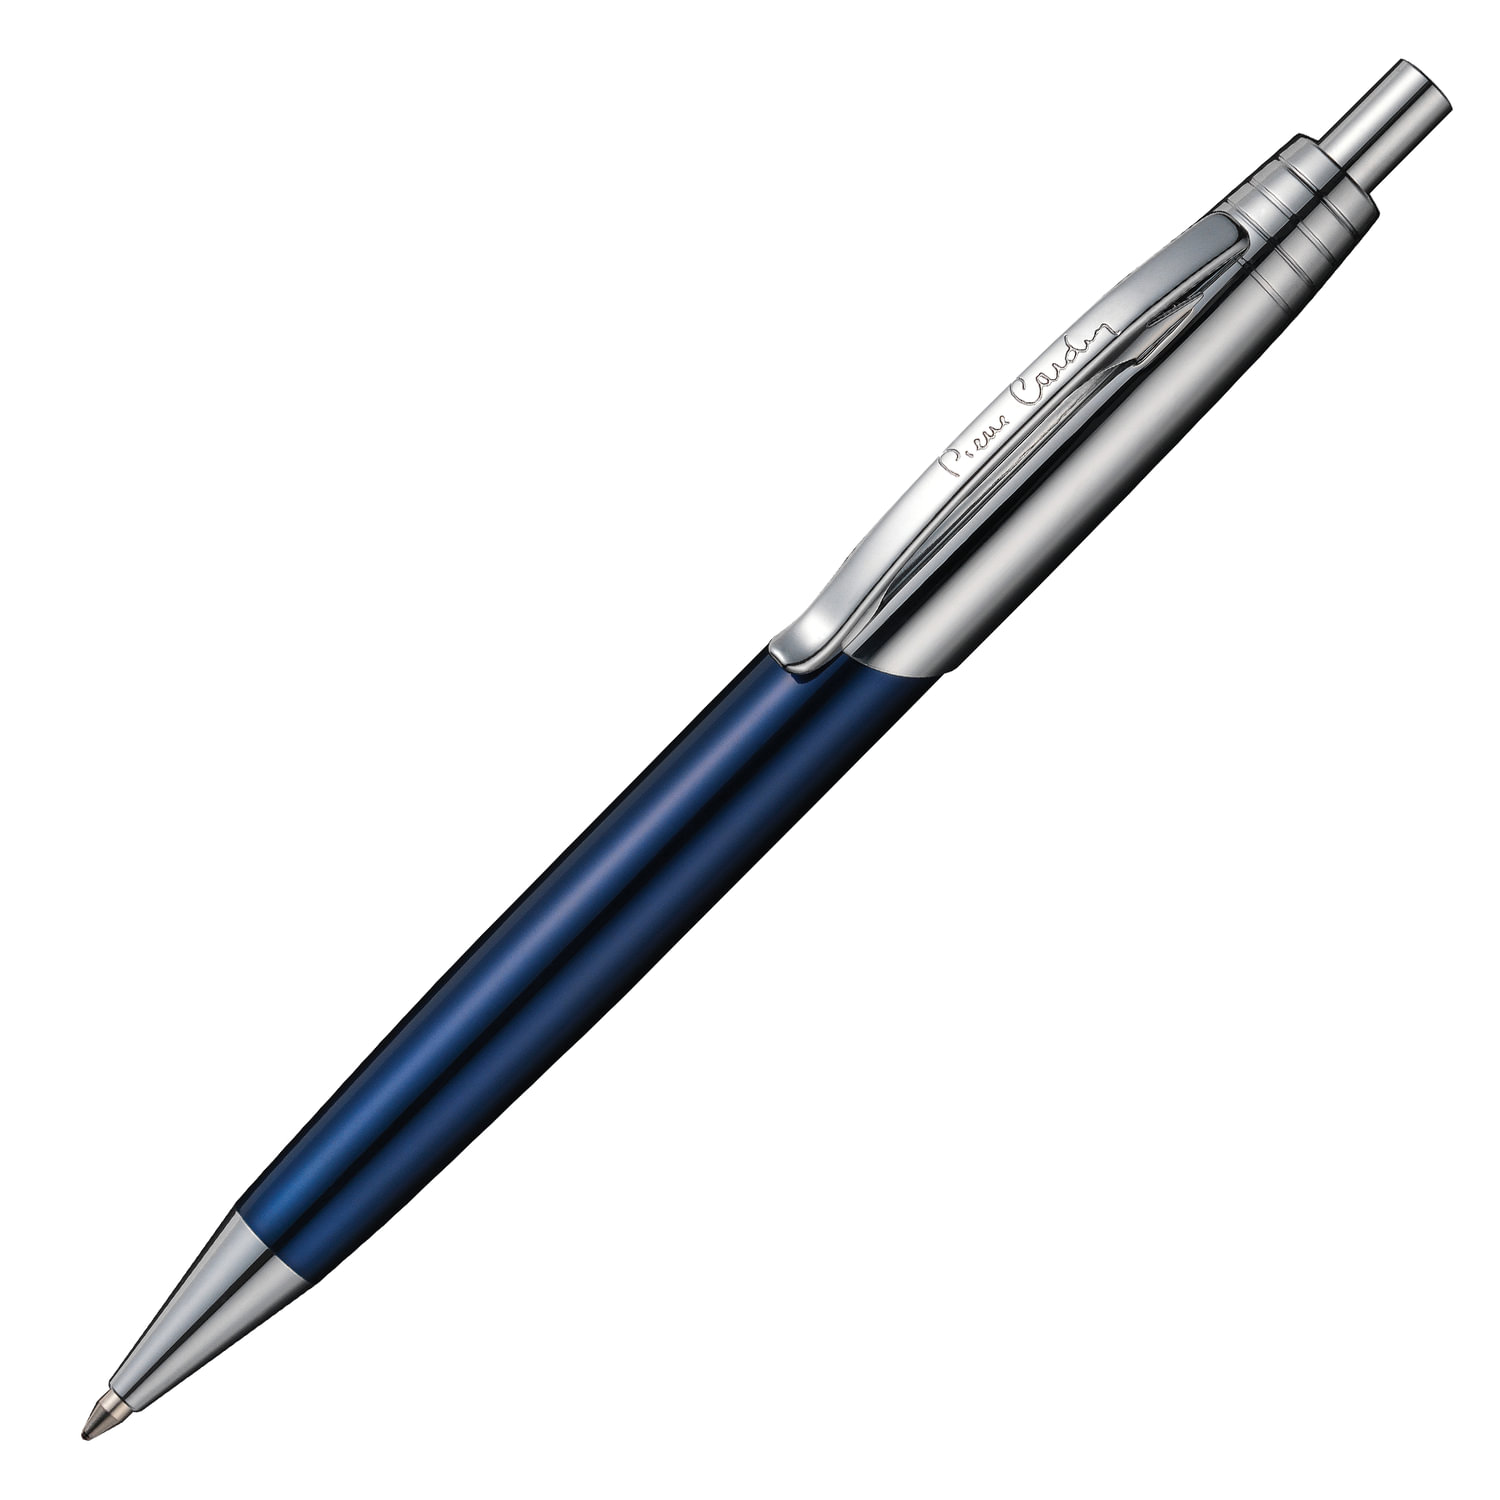 Ручка подарочная шариковая PIERRE CARDIN (Пьер Карден) Easy, корпус синий, латунь, лак, хром, синяя, PC5901BP